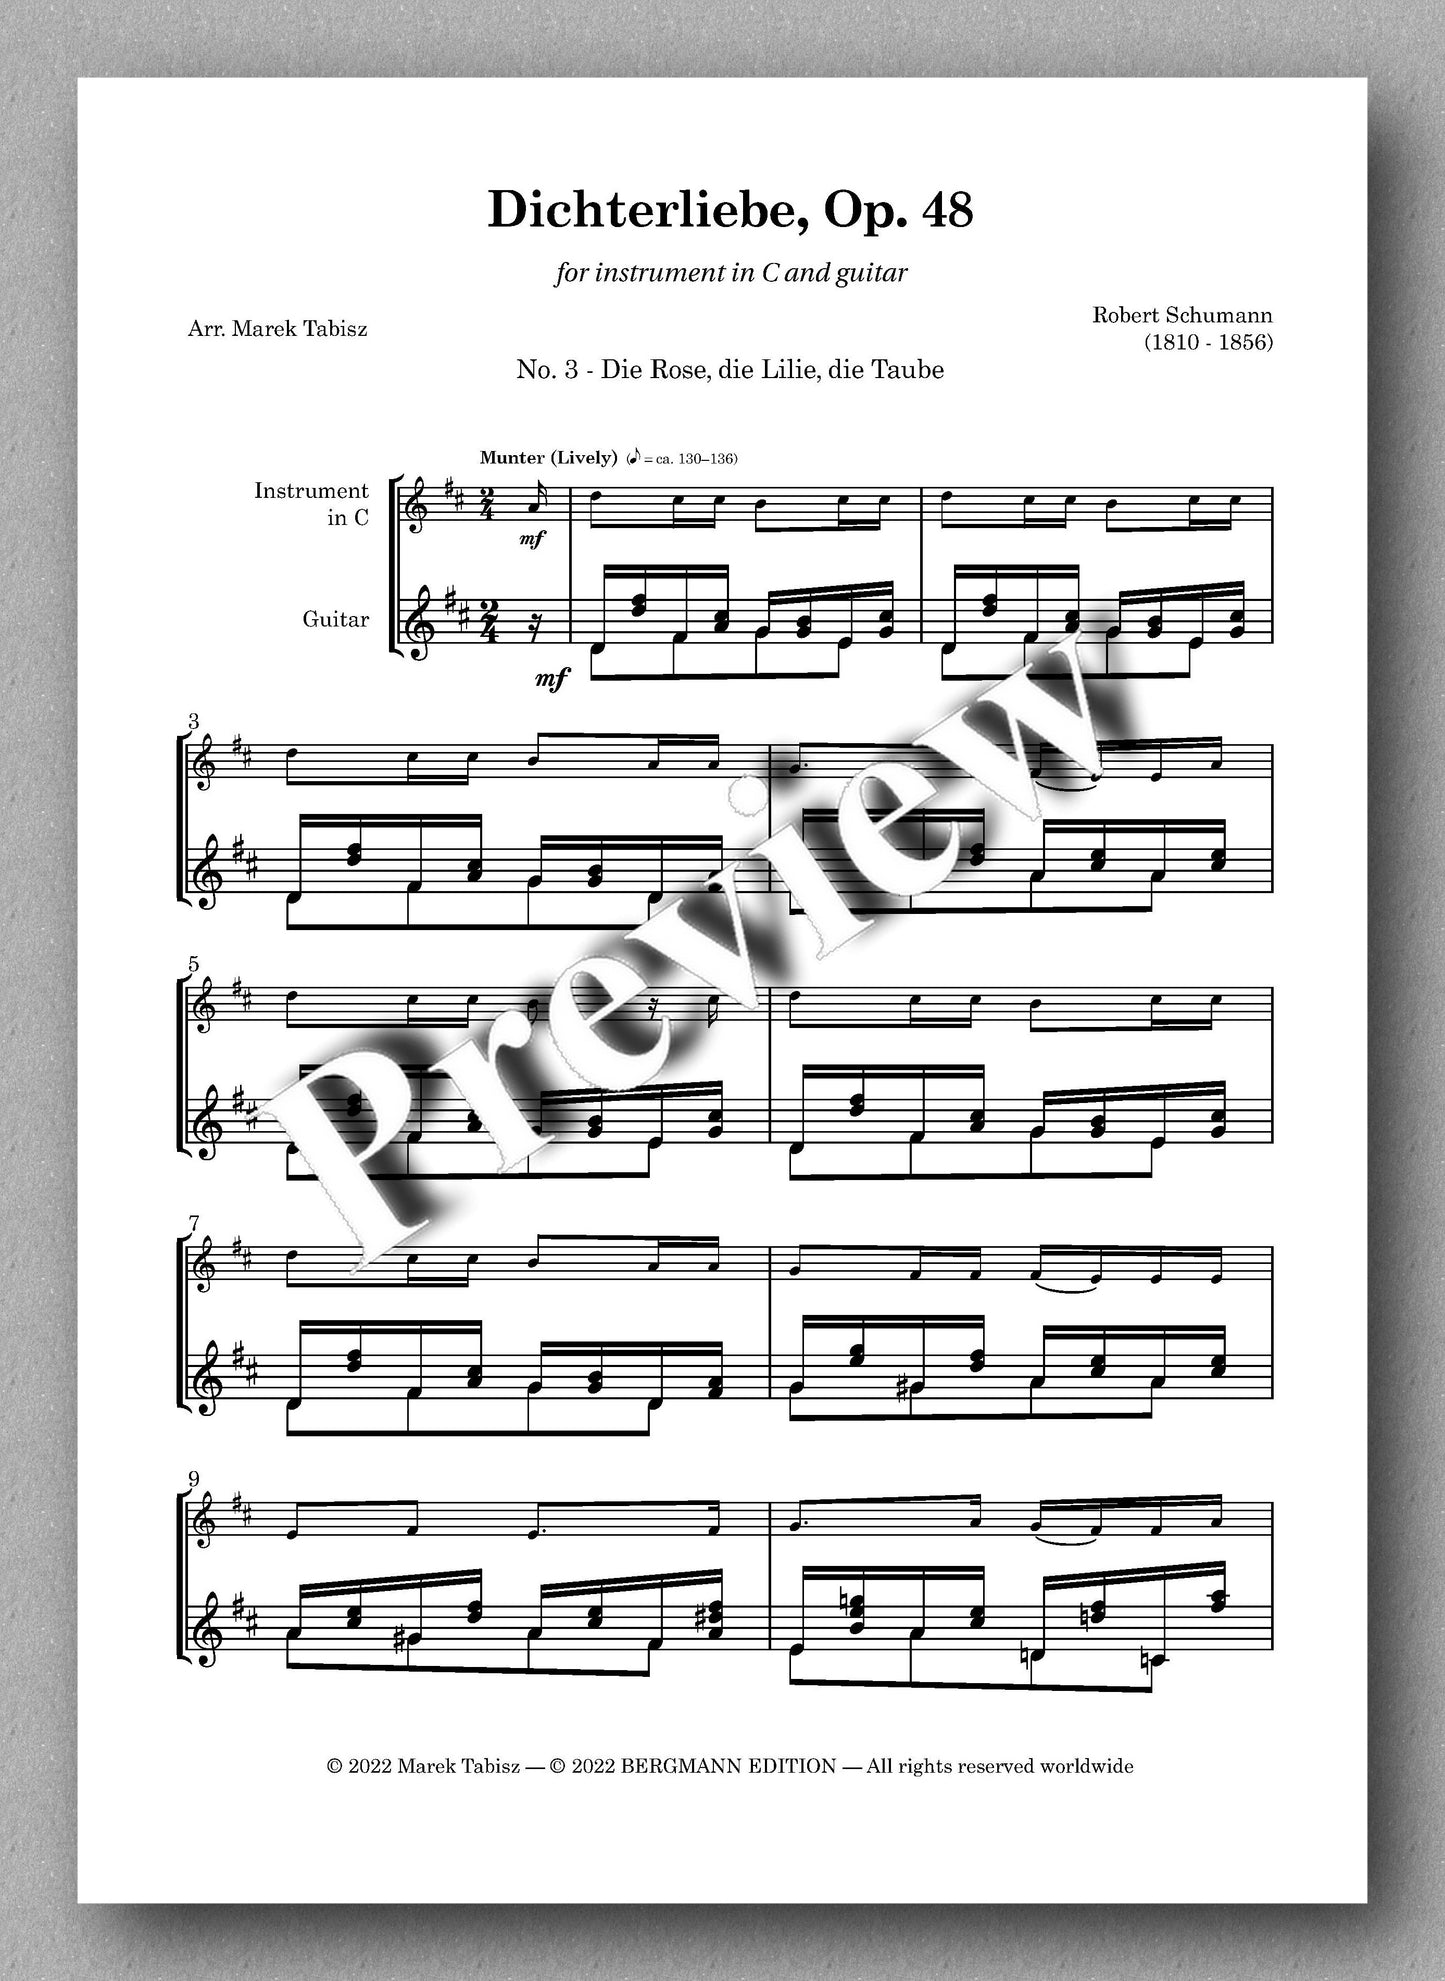 Robert Schumann, Dichterliebe Op. 48 - preview of No. 3 - Die Rose, die Lilie, die Taube